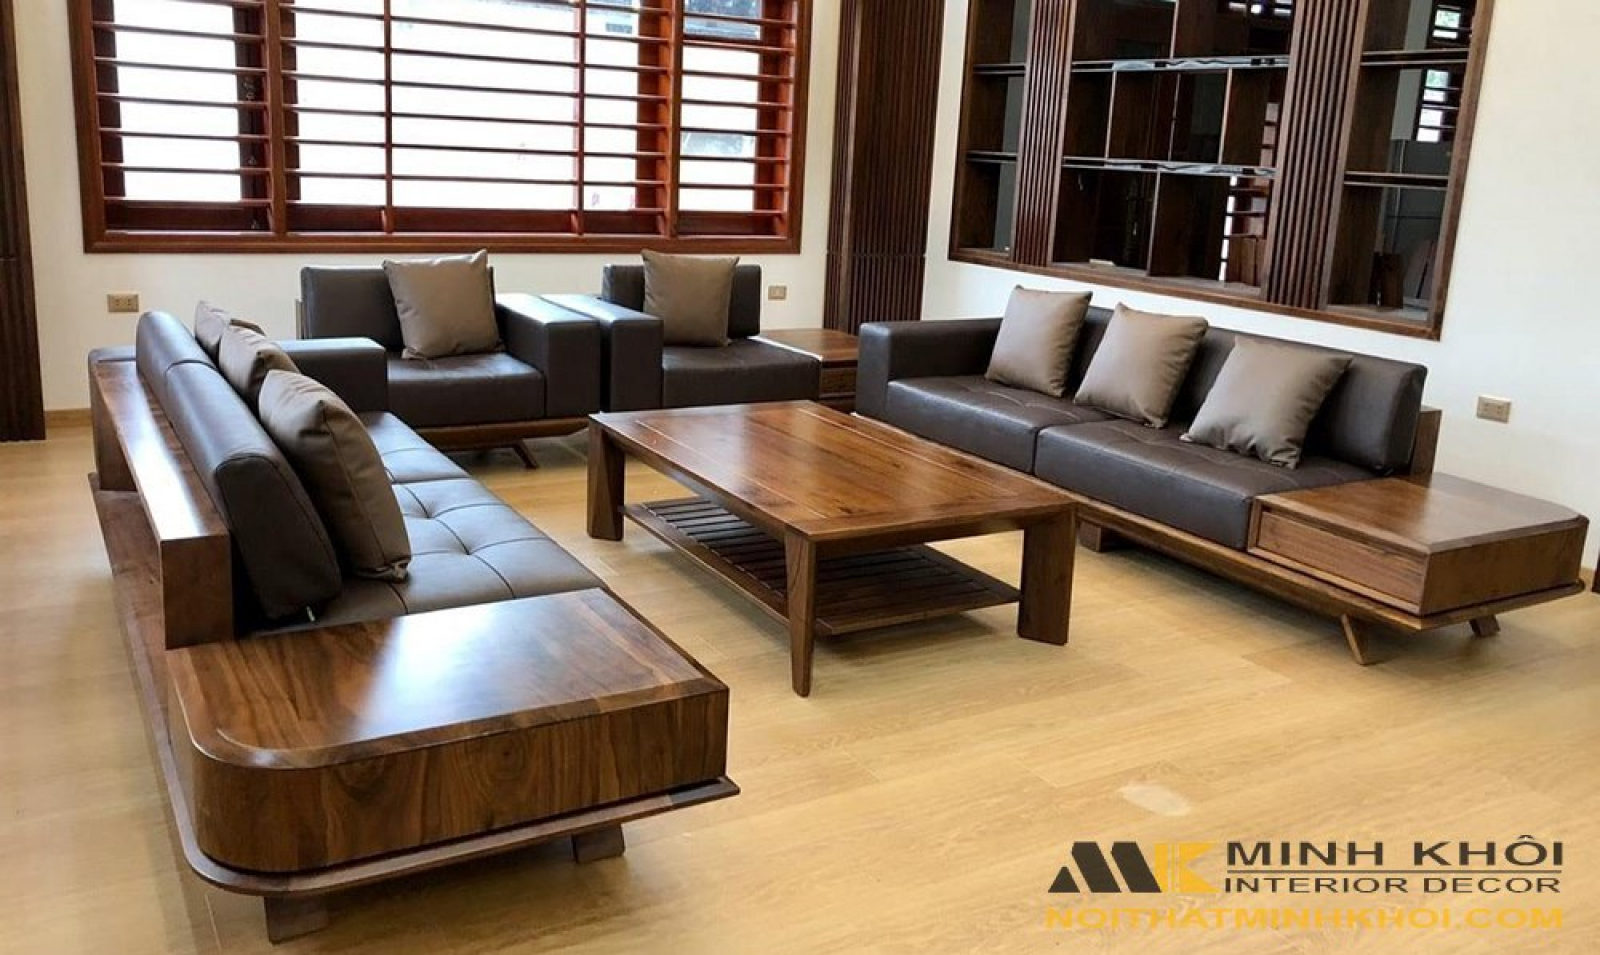 Ghế sofa gỗ đơn giản và hiện đại đang rất được ưa chuộng trong năm nay. Và chúng tôi có tới 5 mẫu ghế sofa gỗ đẹp và hot hiện nay với nhiều kiểu dáng và màu sắc khác nhau để bạn lựa chọn. Đảm bảo sẽ mang lại sự tiện lợi và thú vị cho phòng khách của bạn.